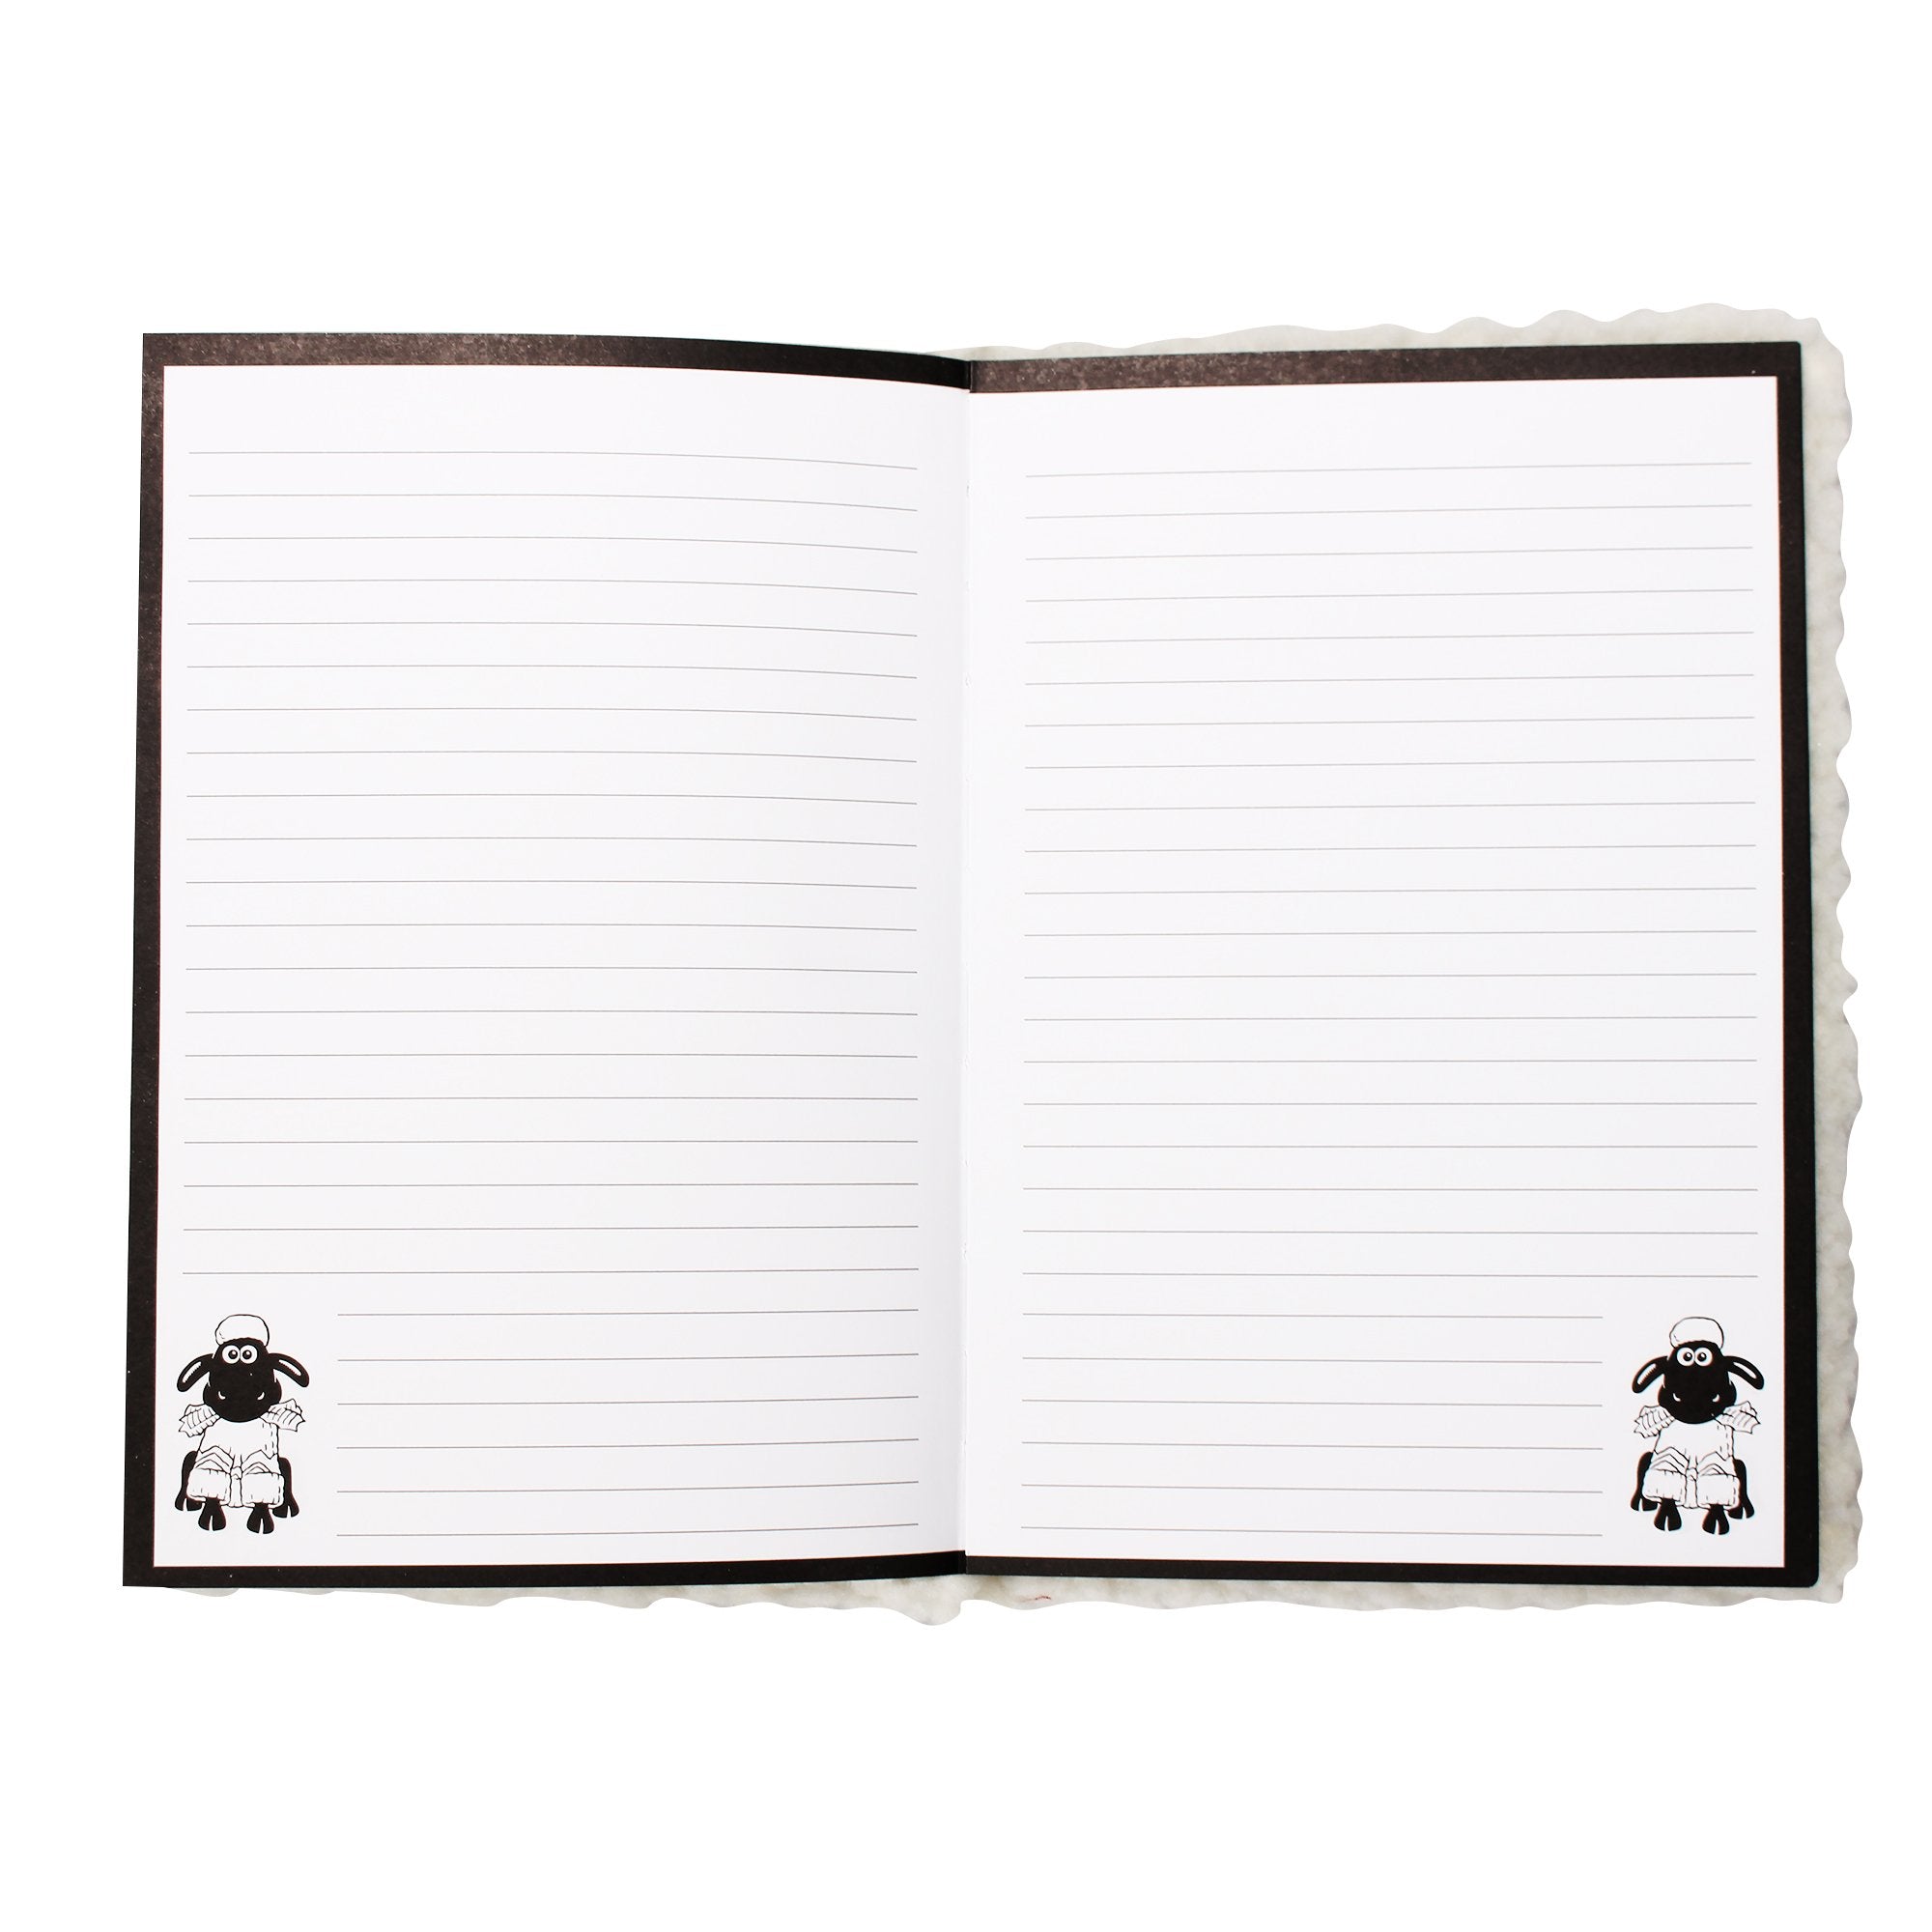 A5 Notebook Plush (Hardback) - Wallace & Gromit (Shaun)